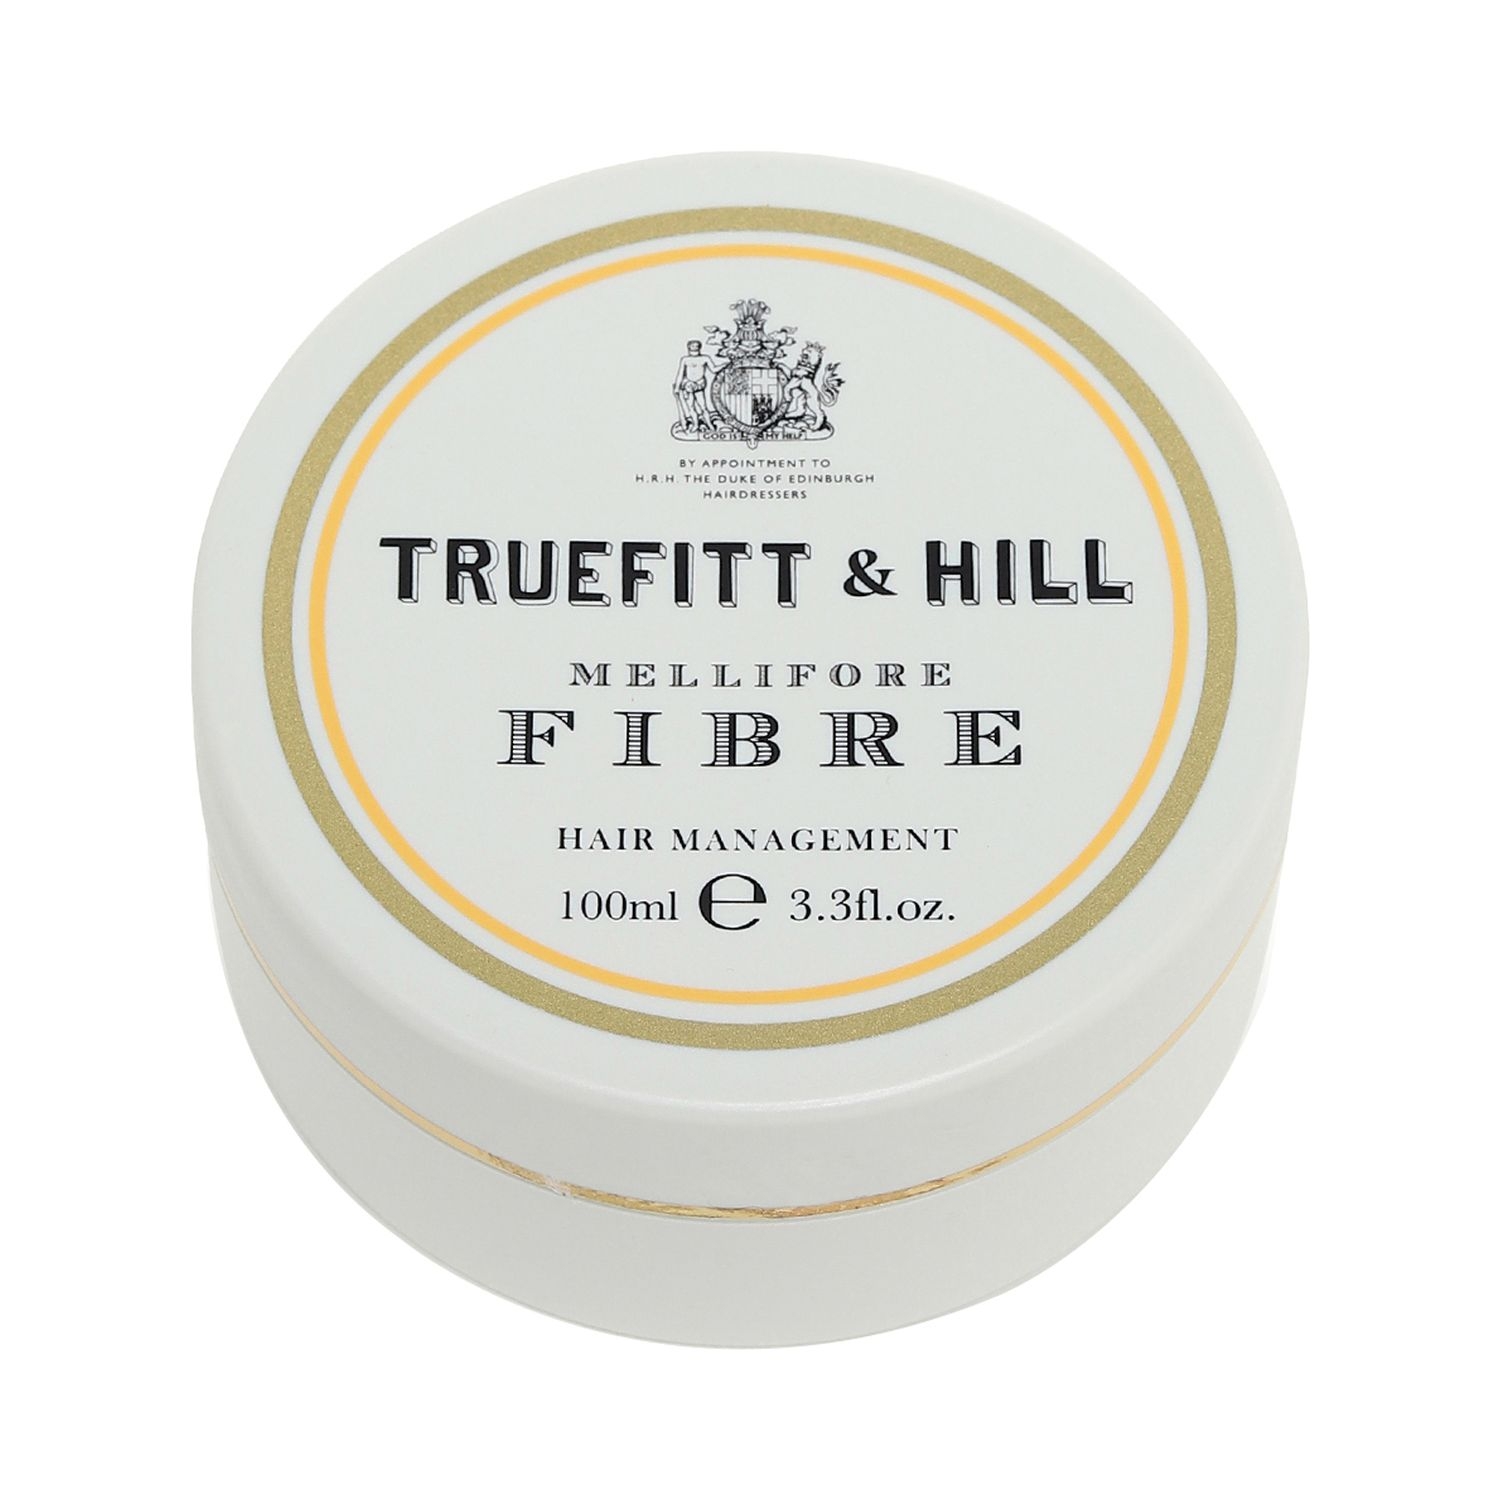 Truefitt & Hill | Truefitt & Hill Hair Management Mellifore Fibre (100ml)